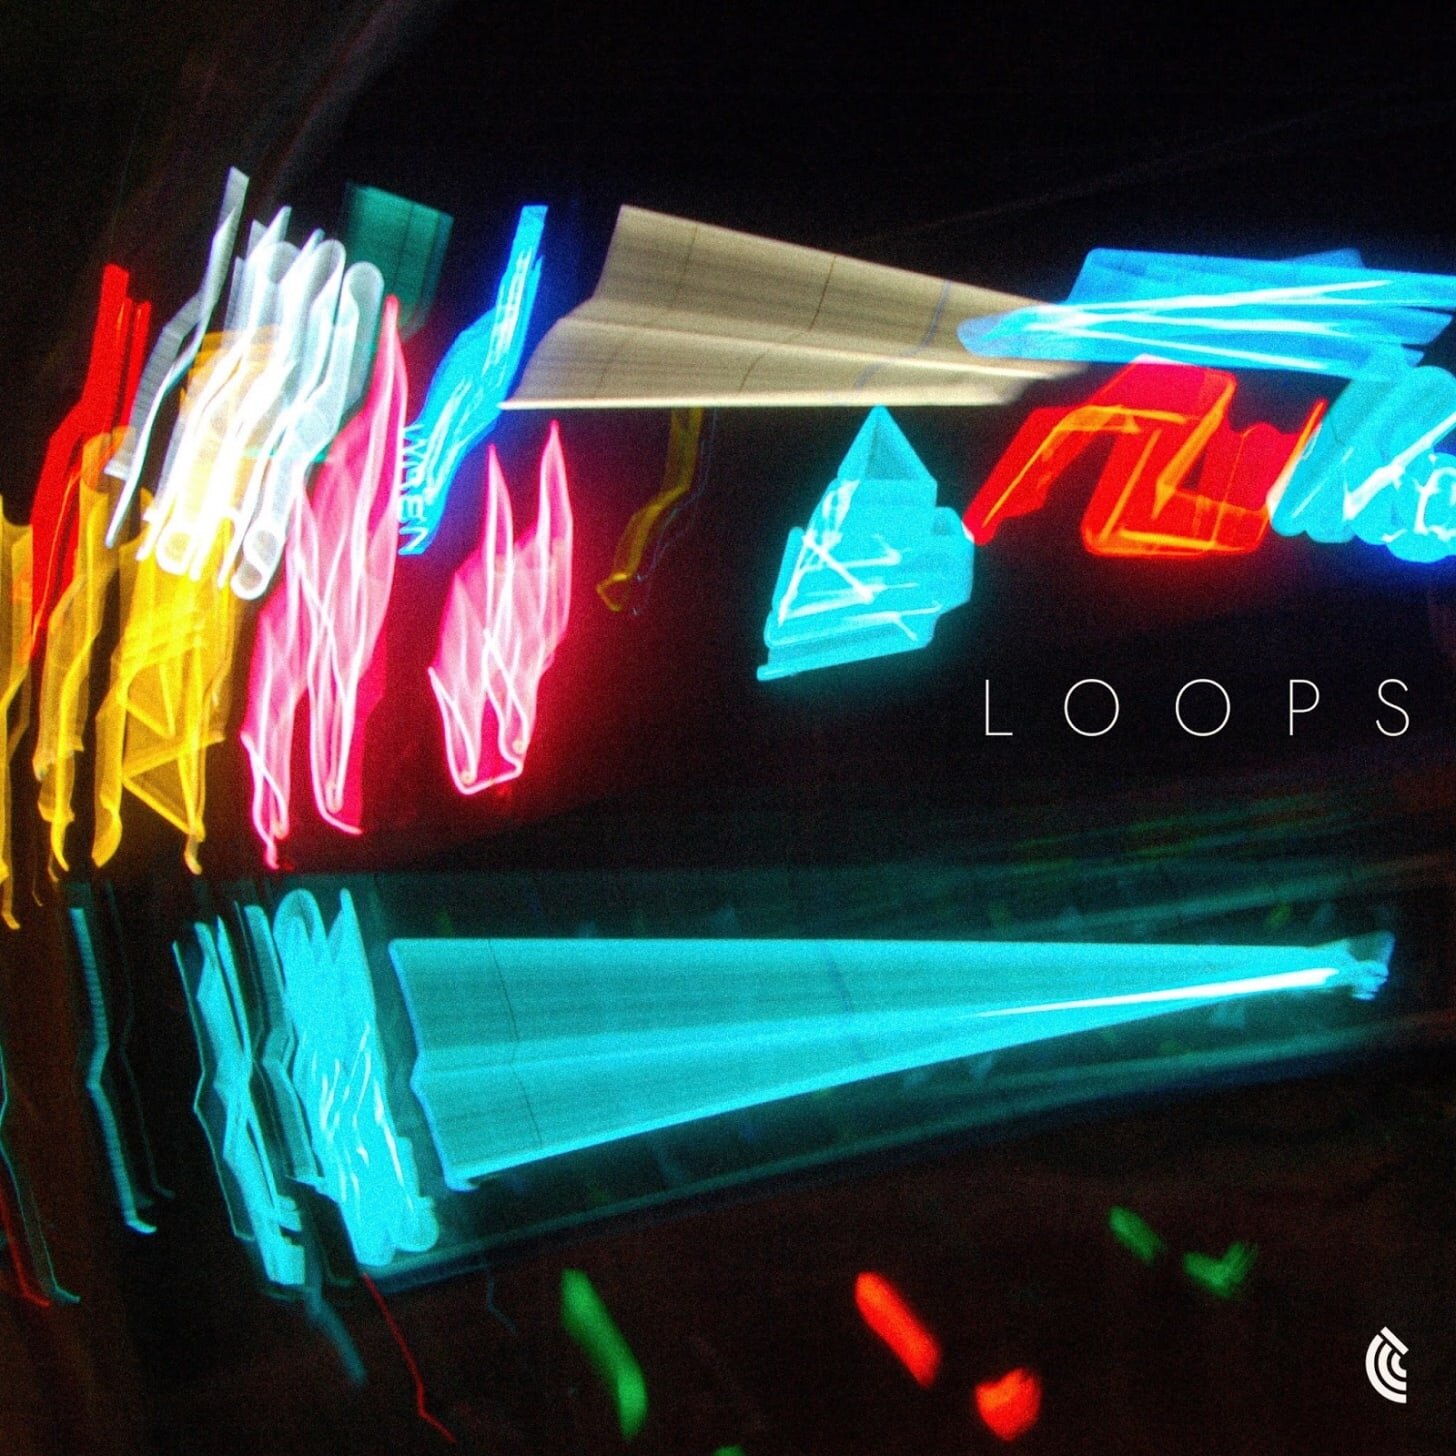 Loops by Zack Zimbler